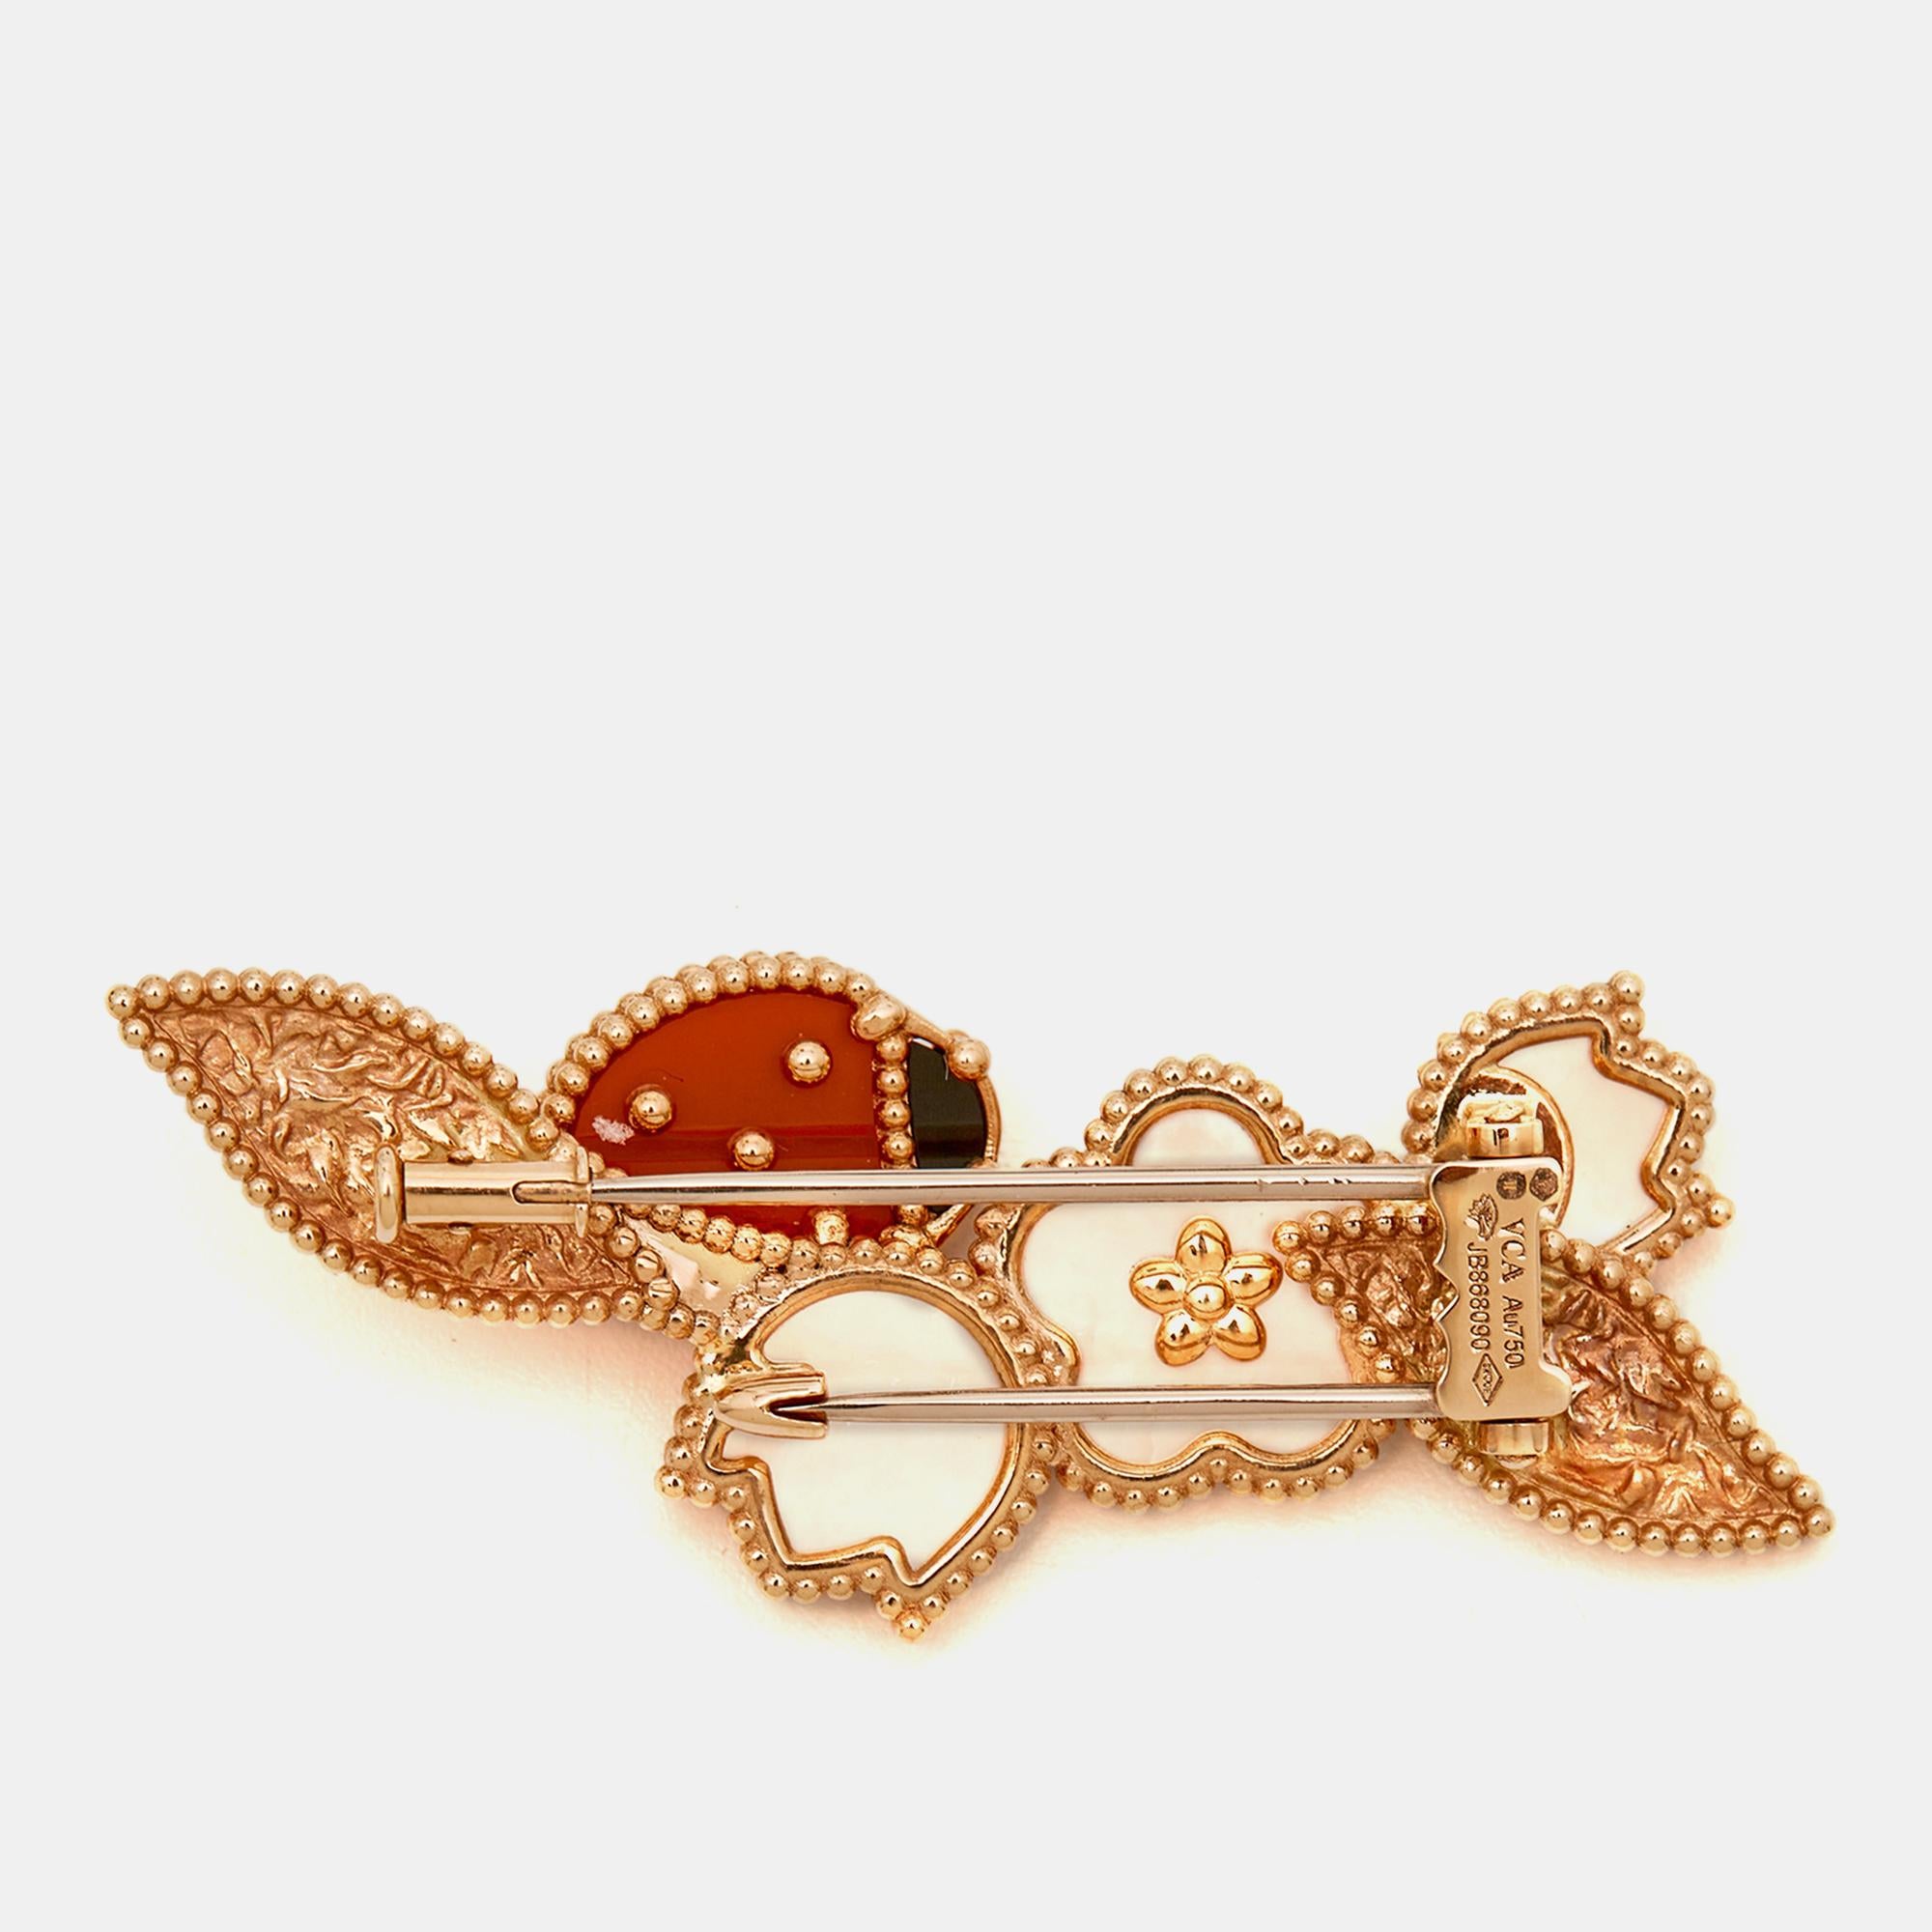 Die Brosche Lucky Spring von Van Cleef & Arpels ist ein exquisites Schmuckstück mit einer Reihe leuchtender Edelsteine, die in 18 Karat Roségold gefasst sind. Das Design strahlt Eleganz und Charme aus und macht sie zu einem zeitlosen und luxuriösen